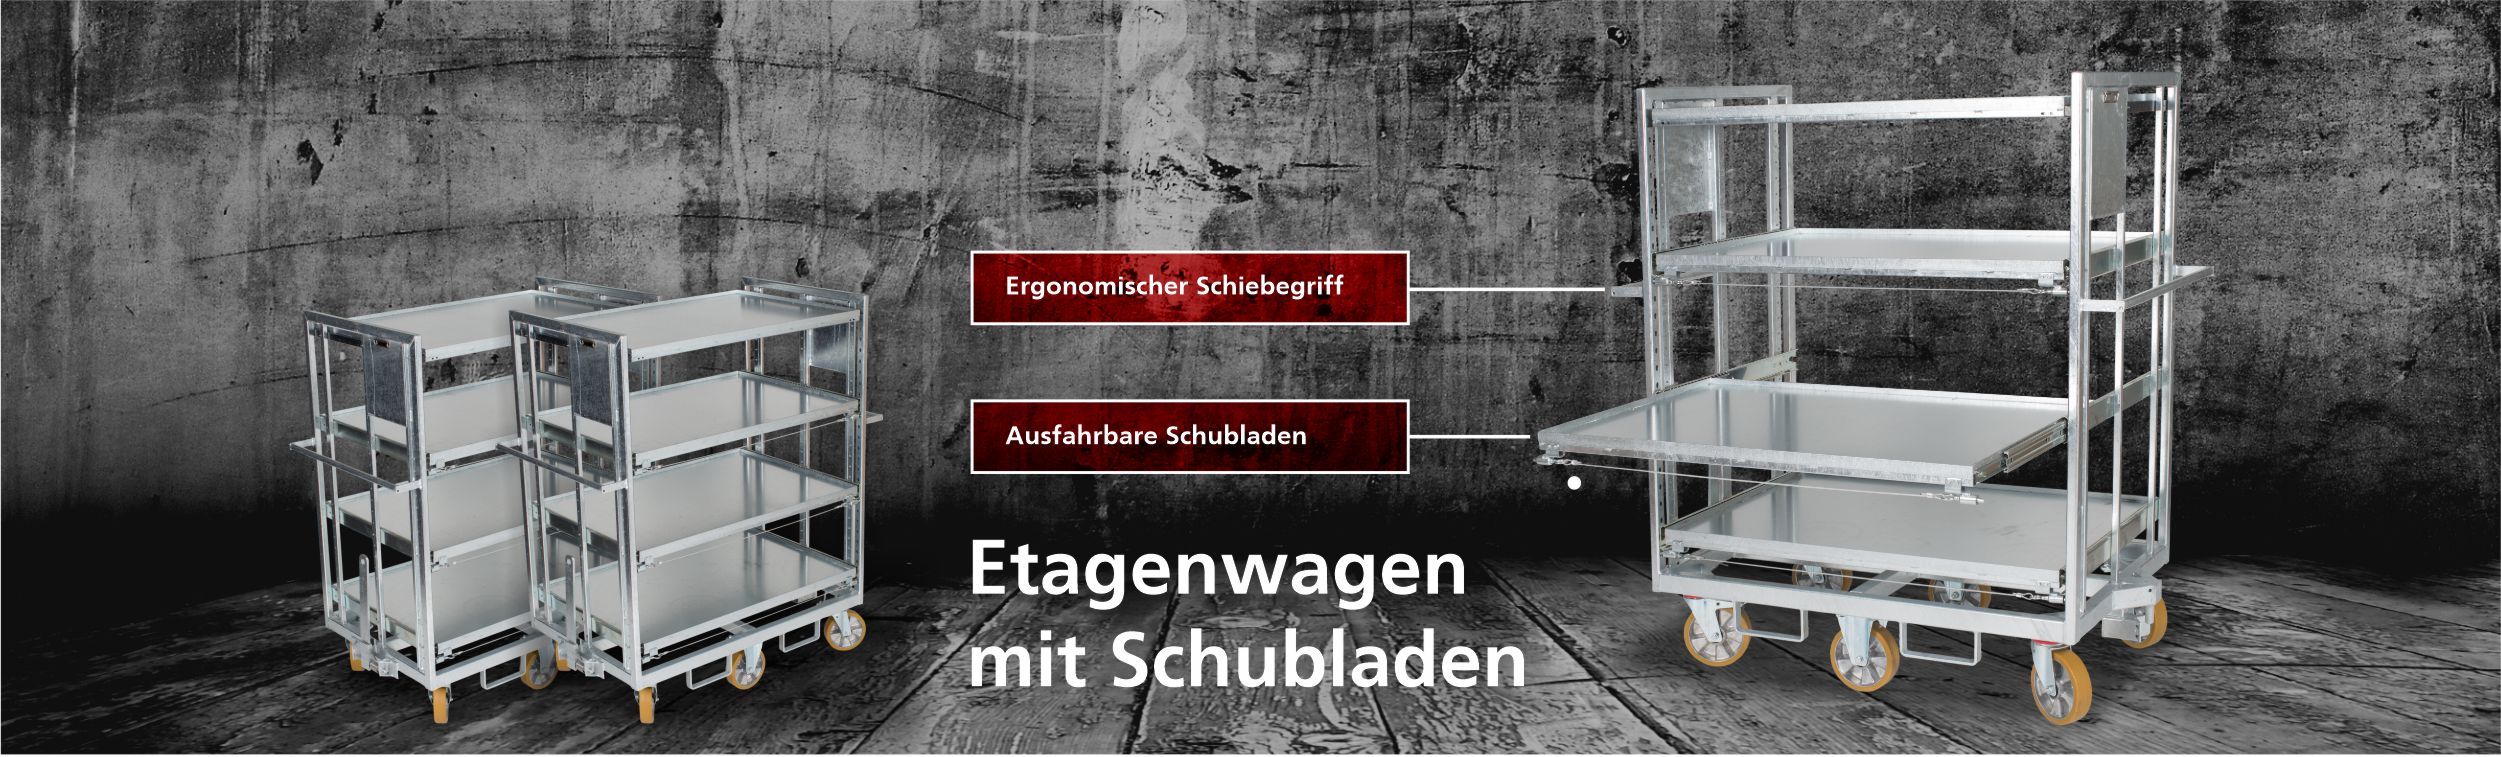 etagenwagen_mit_schubladen